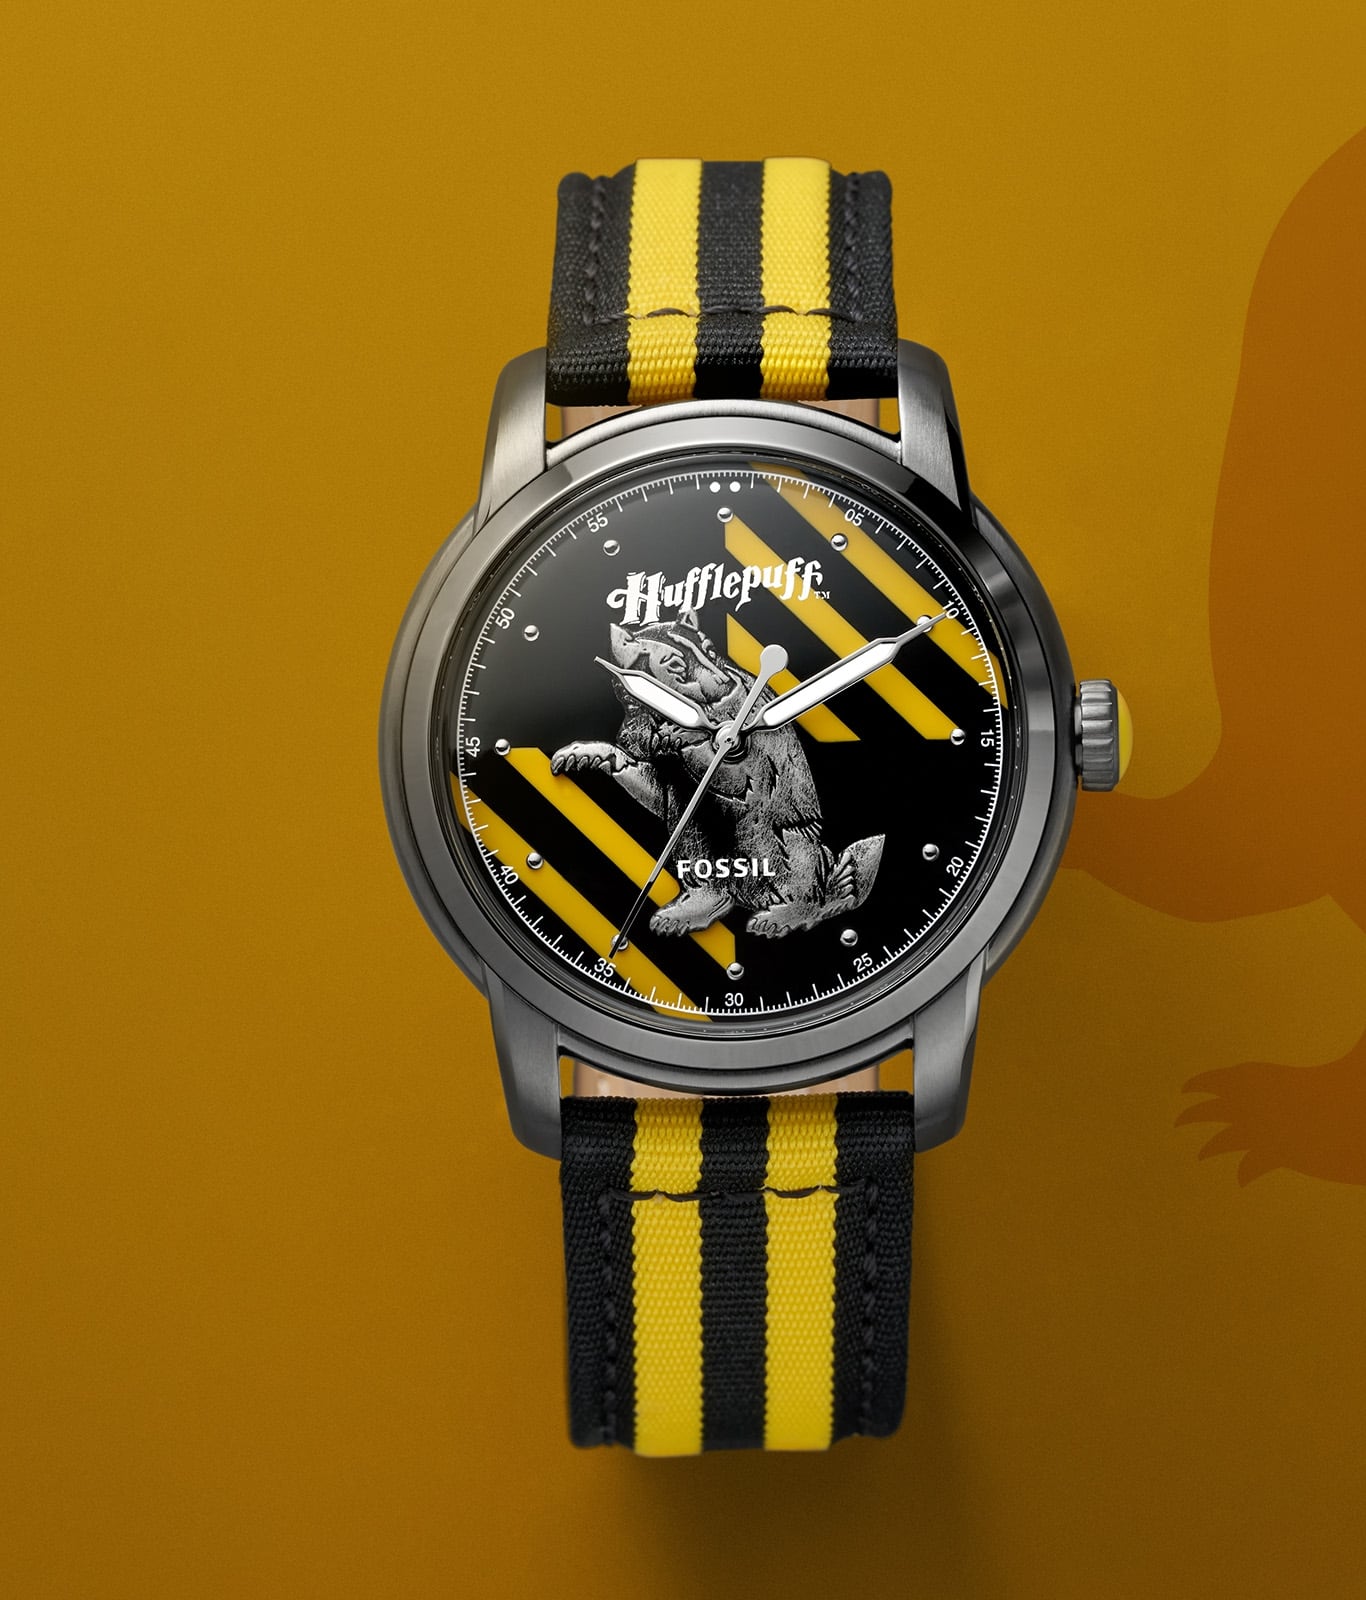 Reloj de la casa Hufflepuff en tono plateado con una correa en colores amarillo y negro.